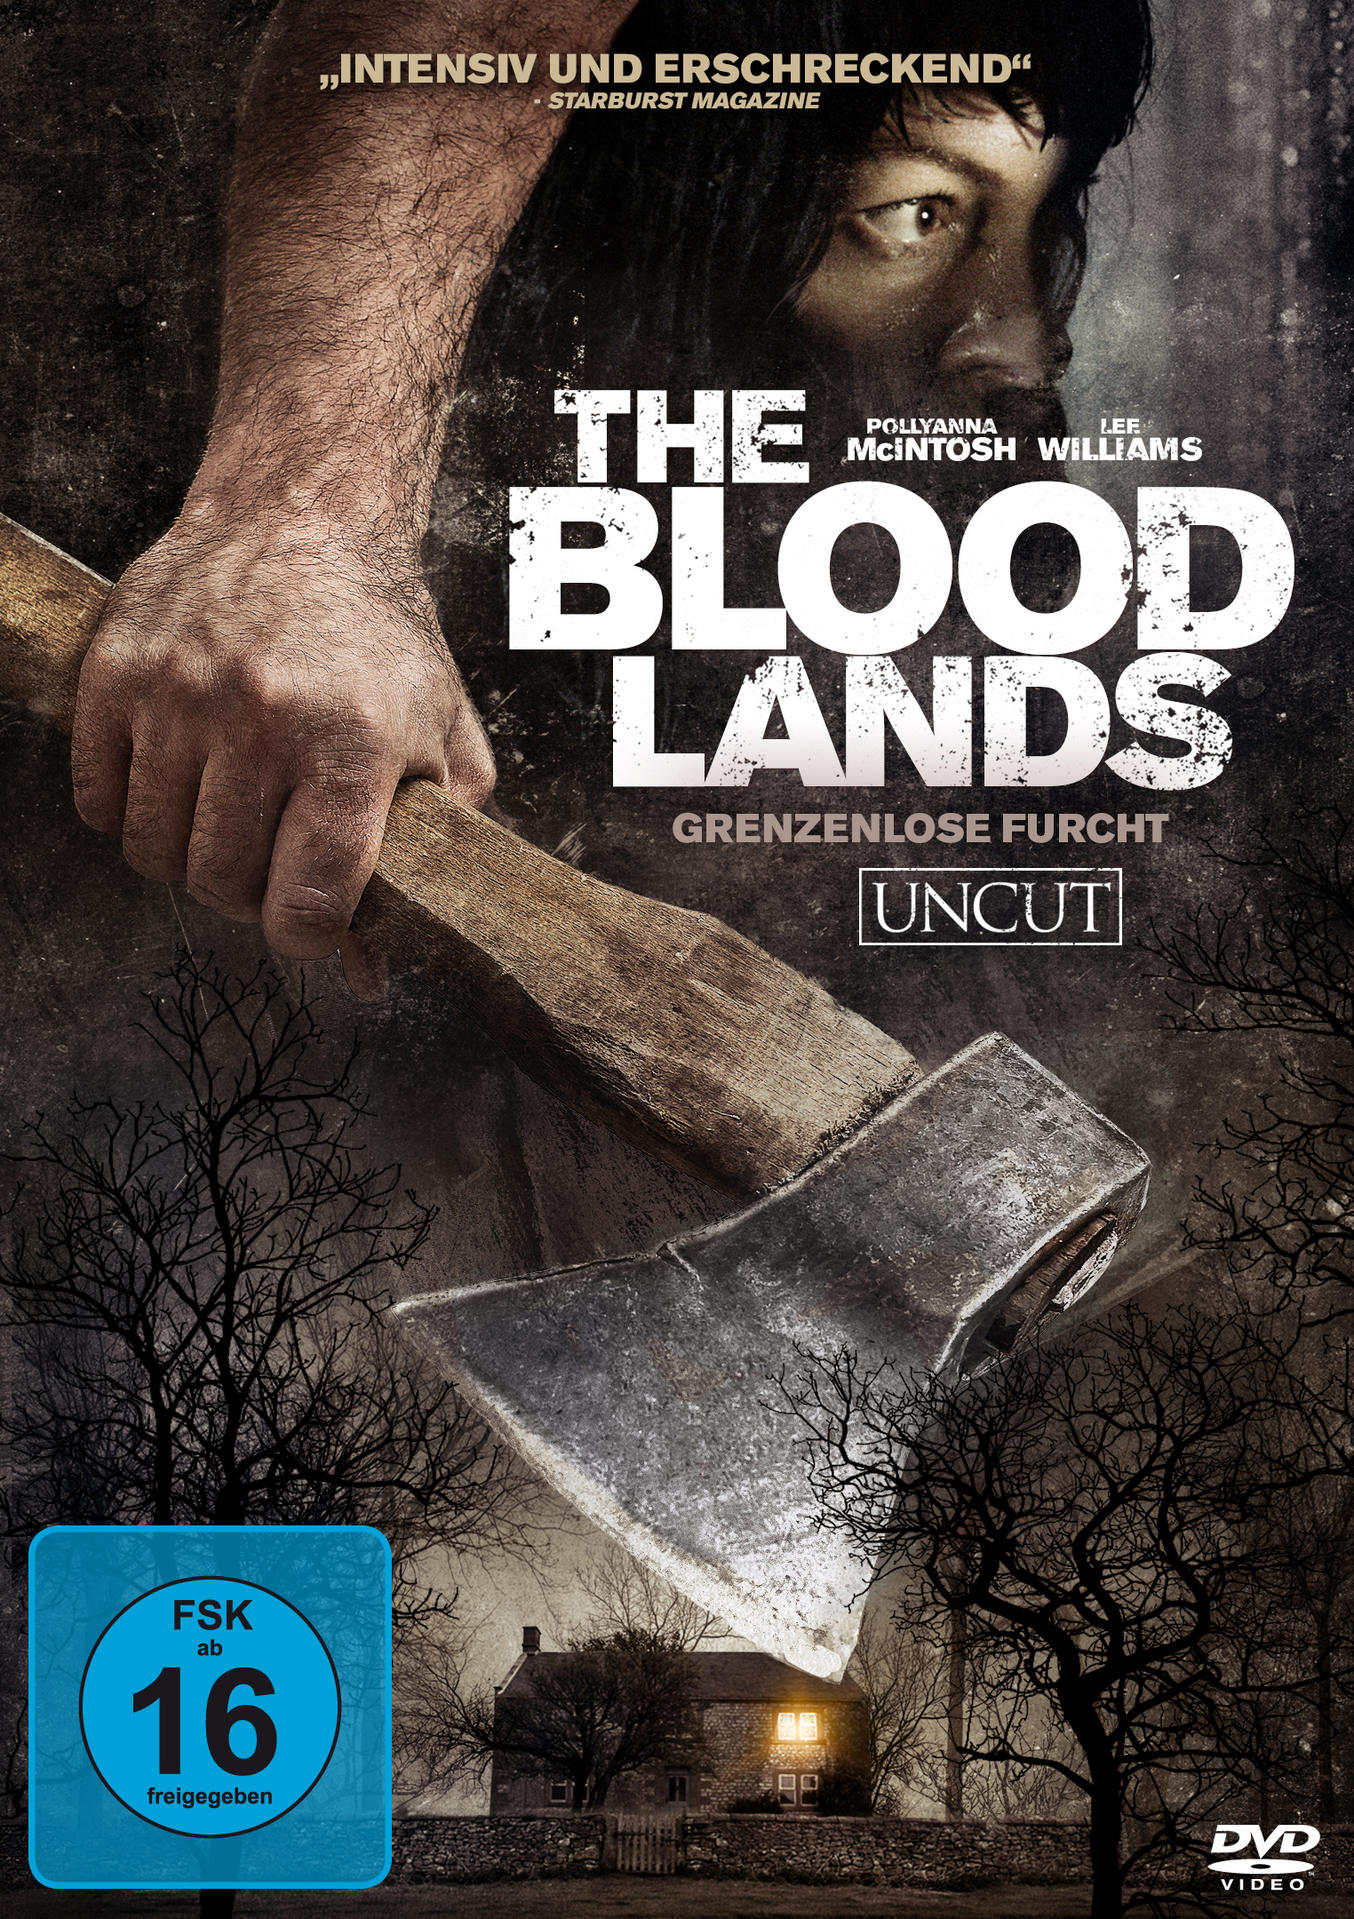 The Blood DVD Lands-Grenzenlose Furcht